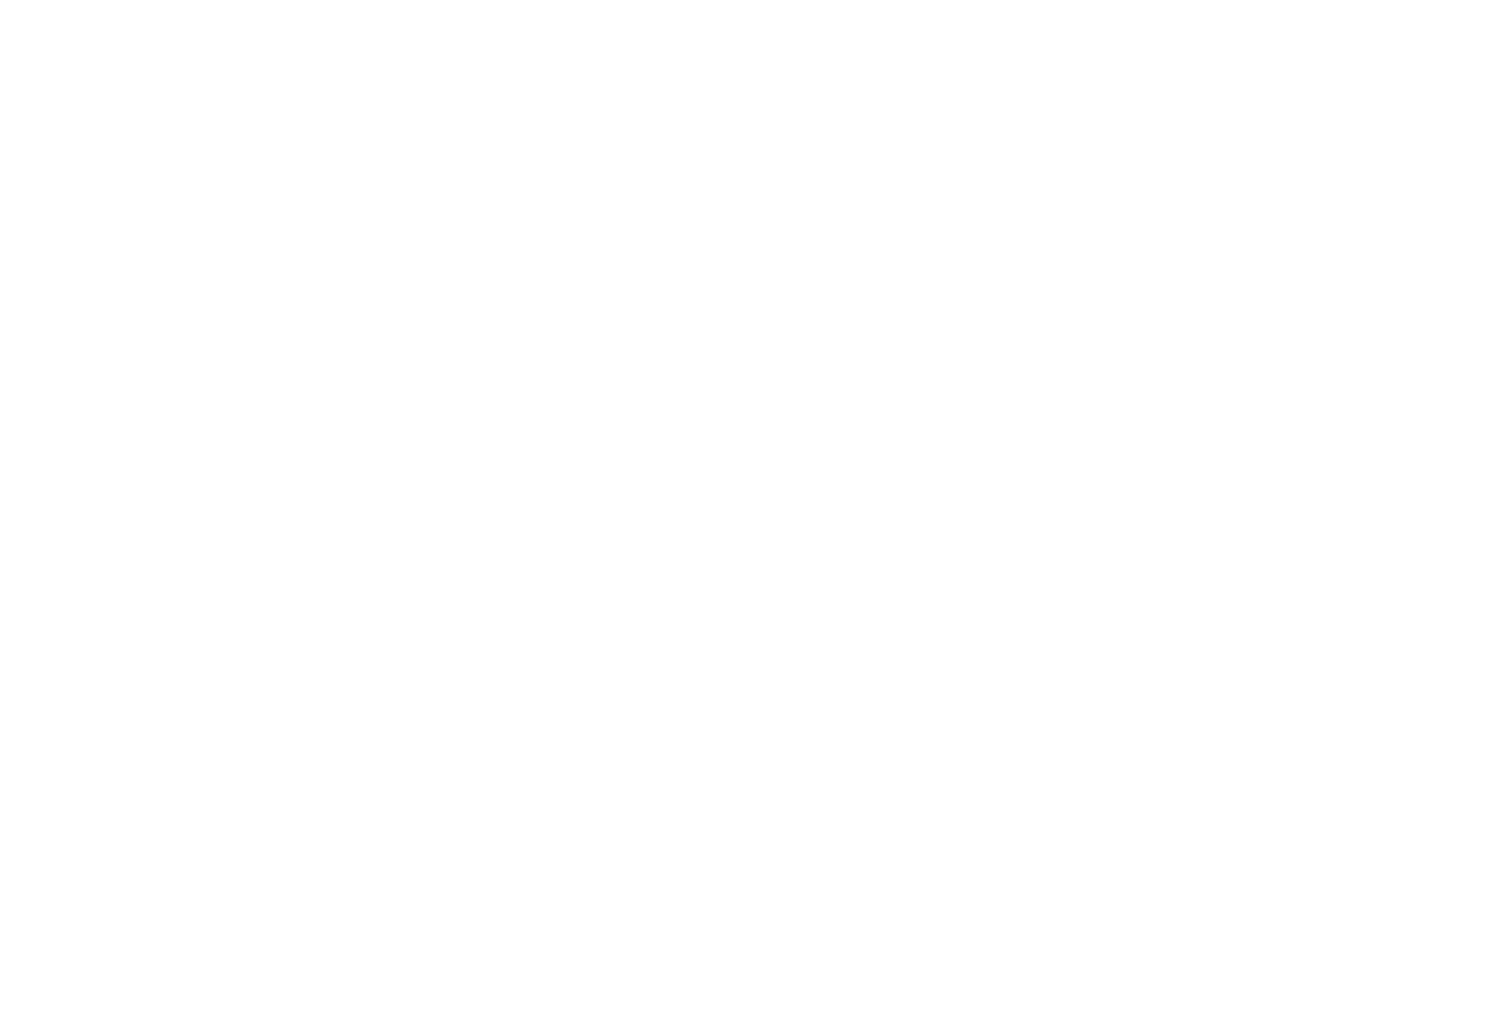 MK Designs India